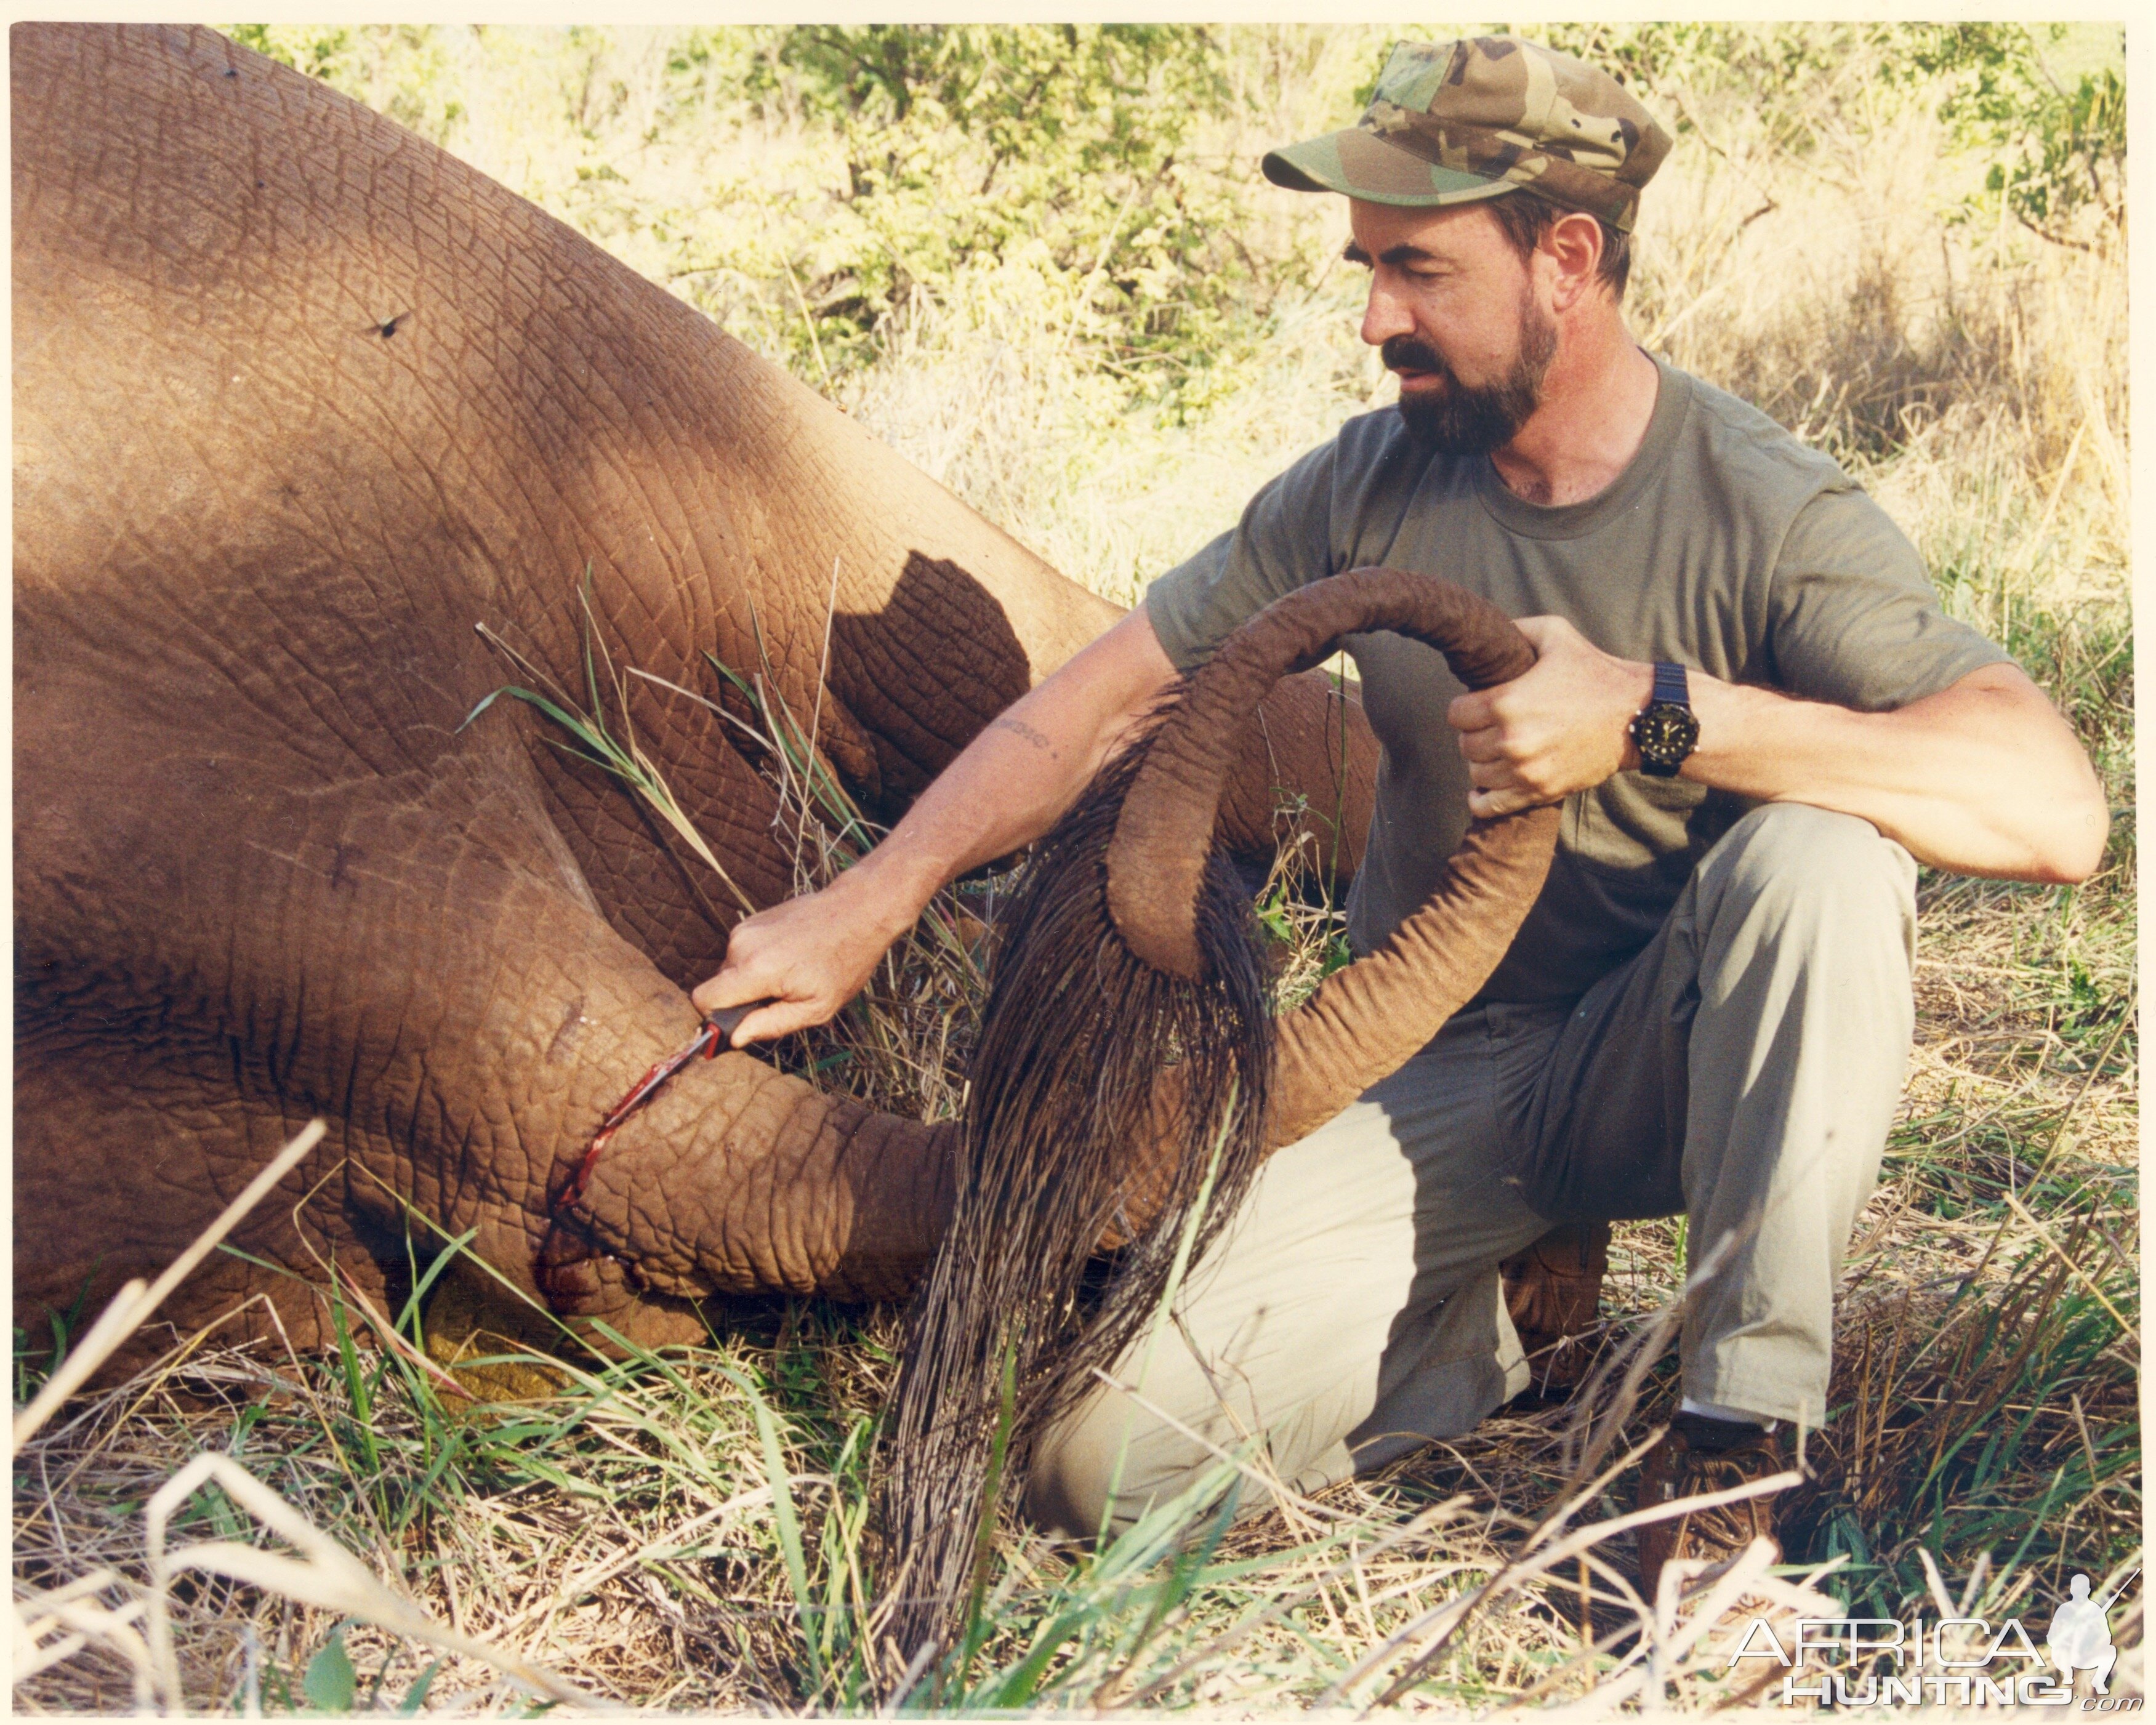 Zimbabwe Hunting Elephant